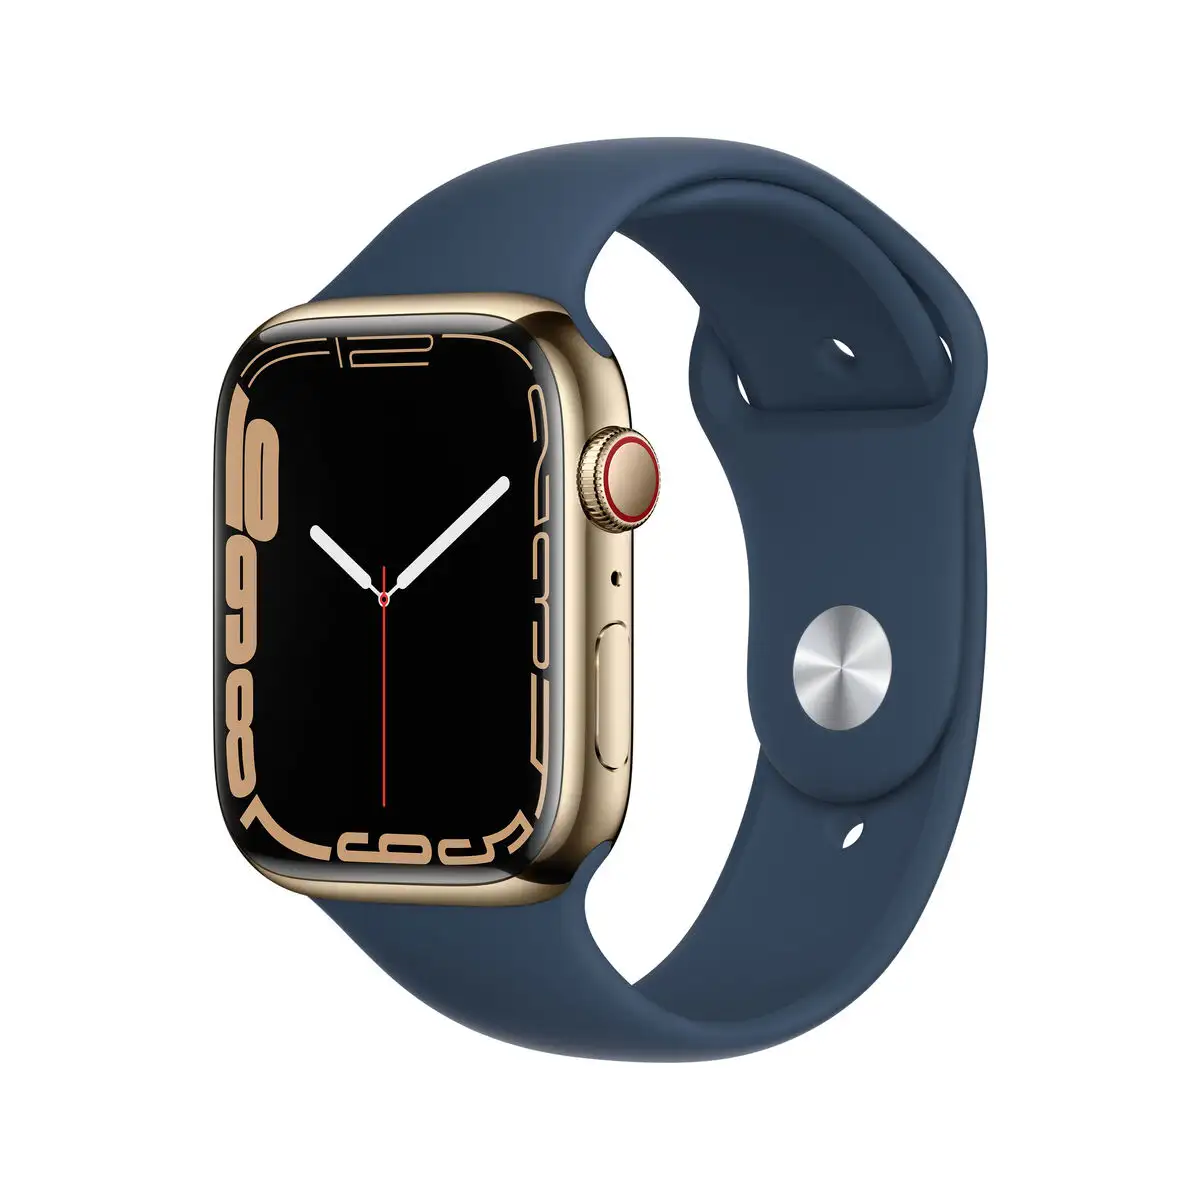 Montre intelligente apple watch series 7 bleu dore_6440. DIAYTAR SENEGAL - Votre Boutique en Ligne, Votre Choix Illimité. Parcourez nos rayons et découvrez des produits qui vous inspirent, de la mode à la maison et bien plus.